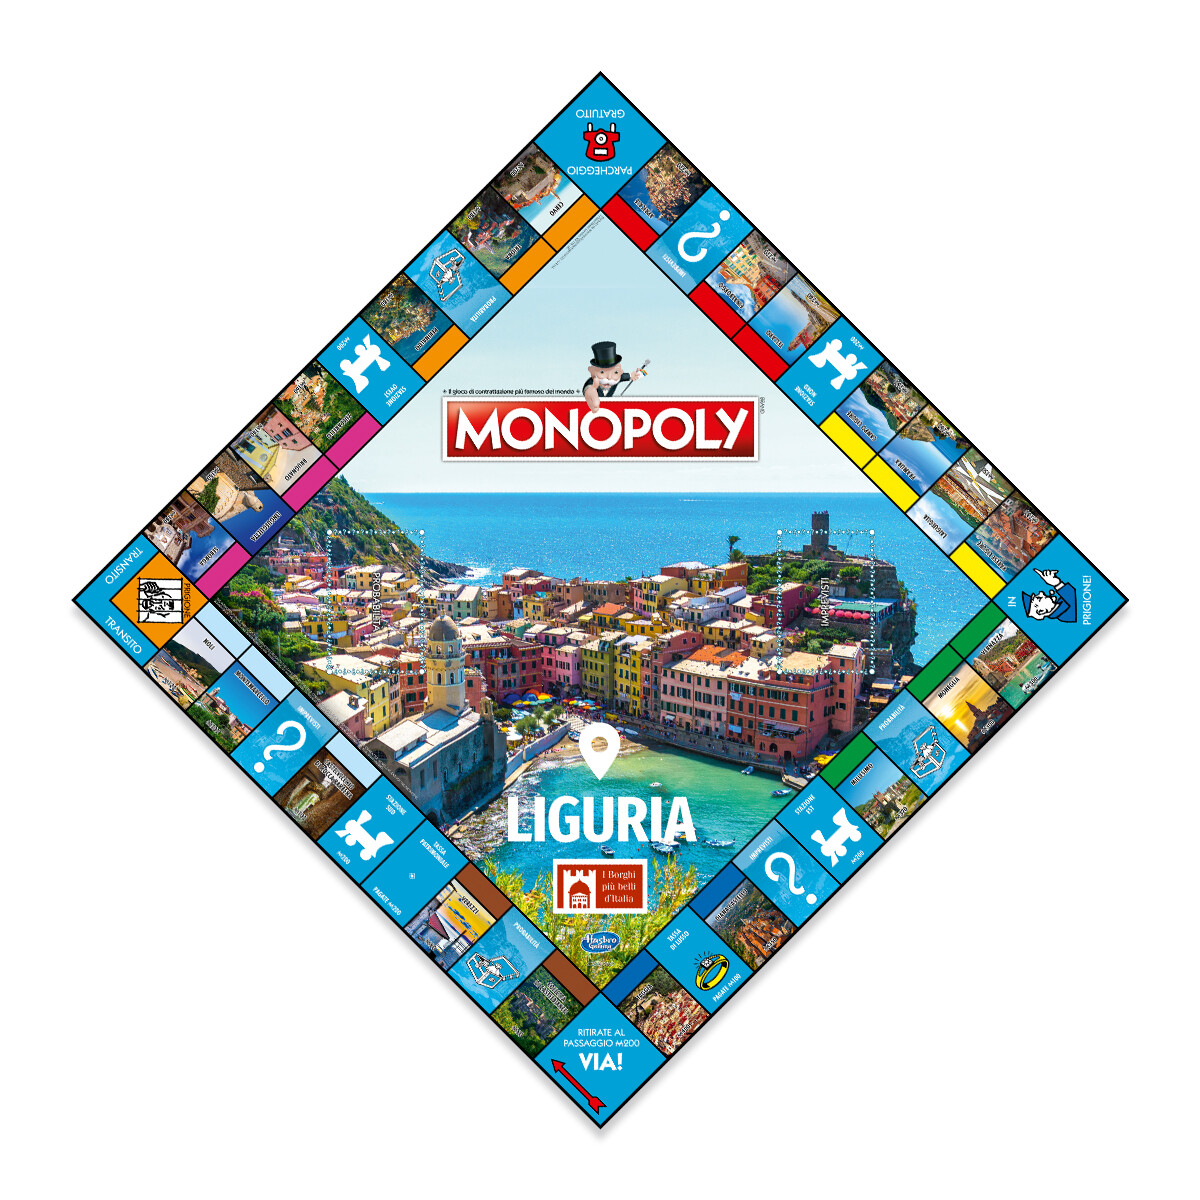 Monopoly Liguria - Edizione I Borghi Più Belli d'Italia - Monopoly